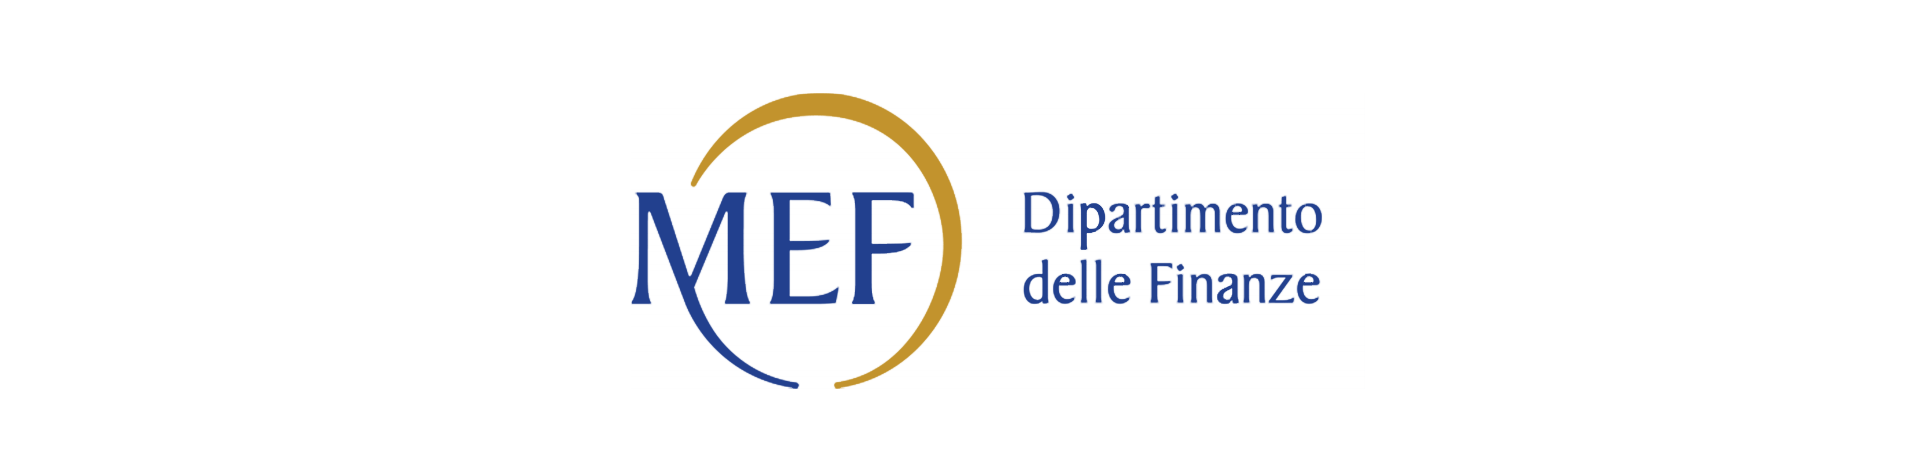 Dipartimento delle Finanze logo